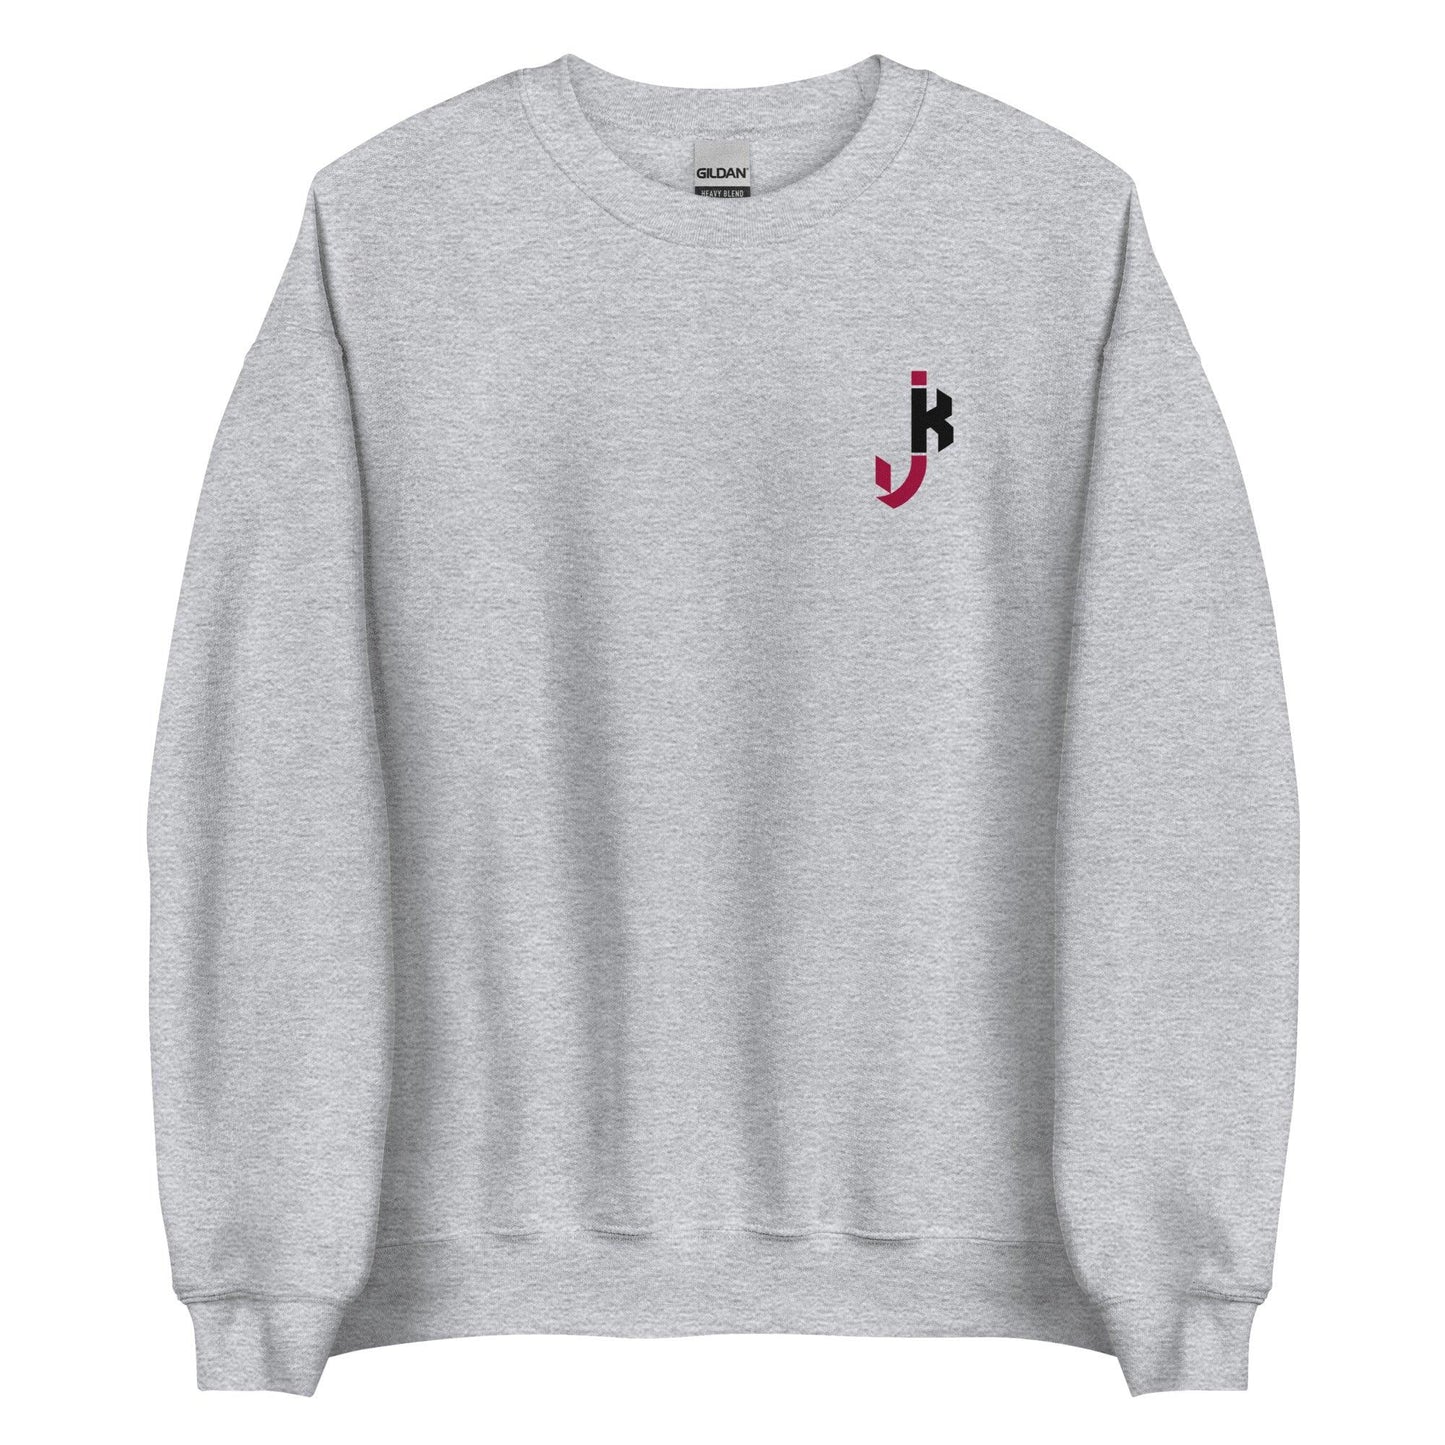 Jalon Kilgore "Essential" Sweatshirt - Fan Arch